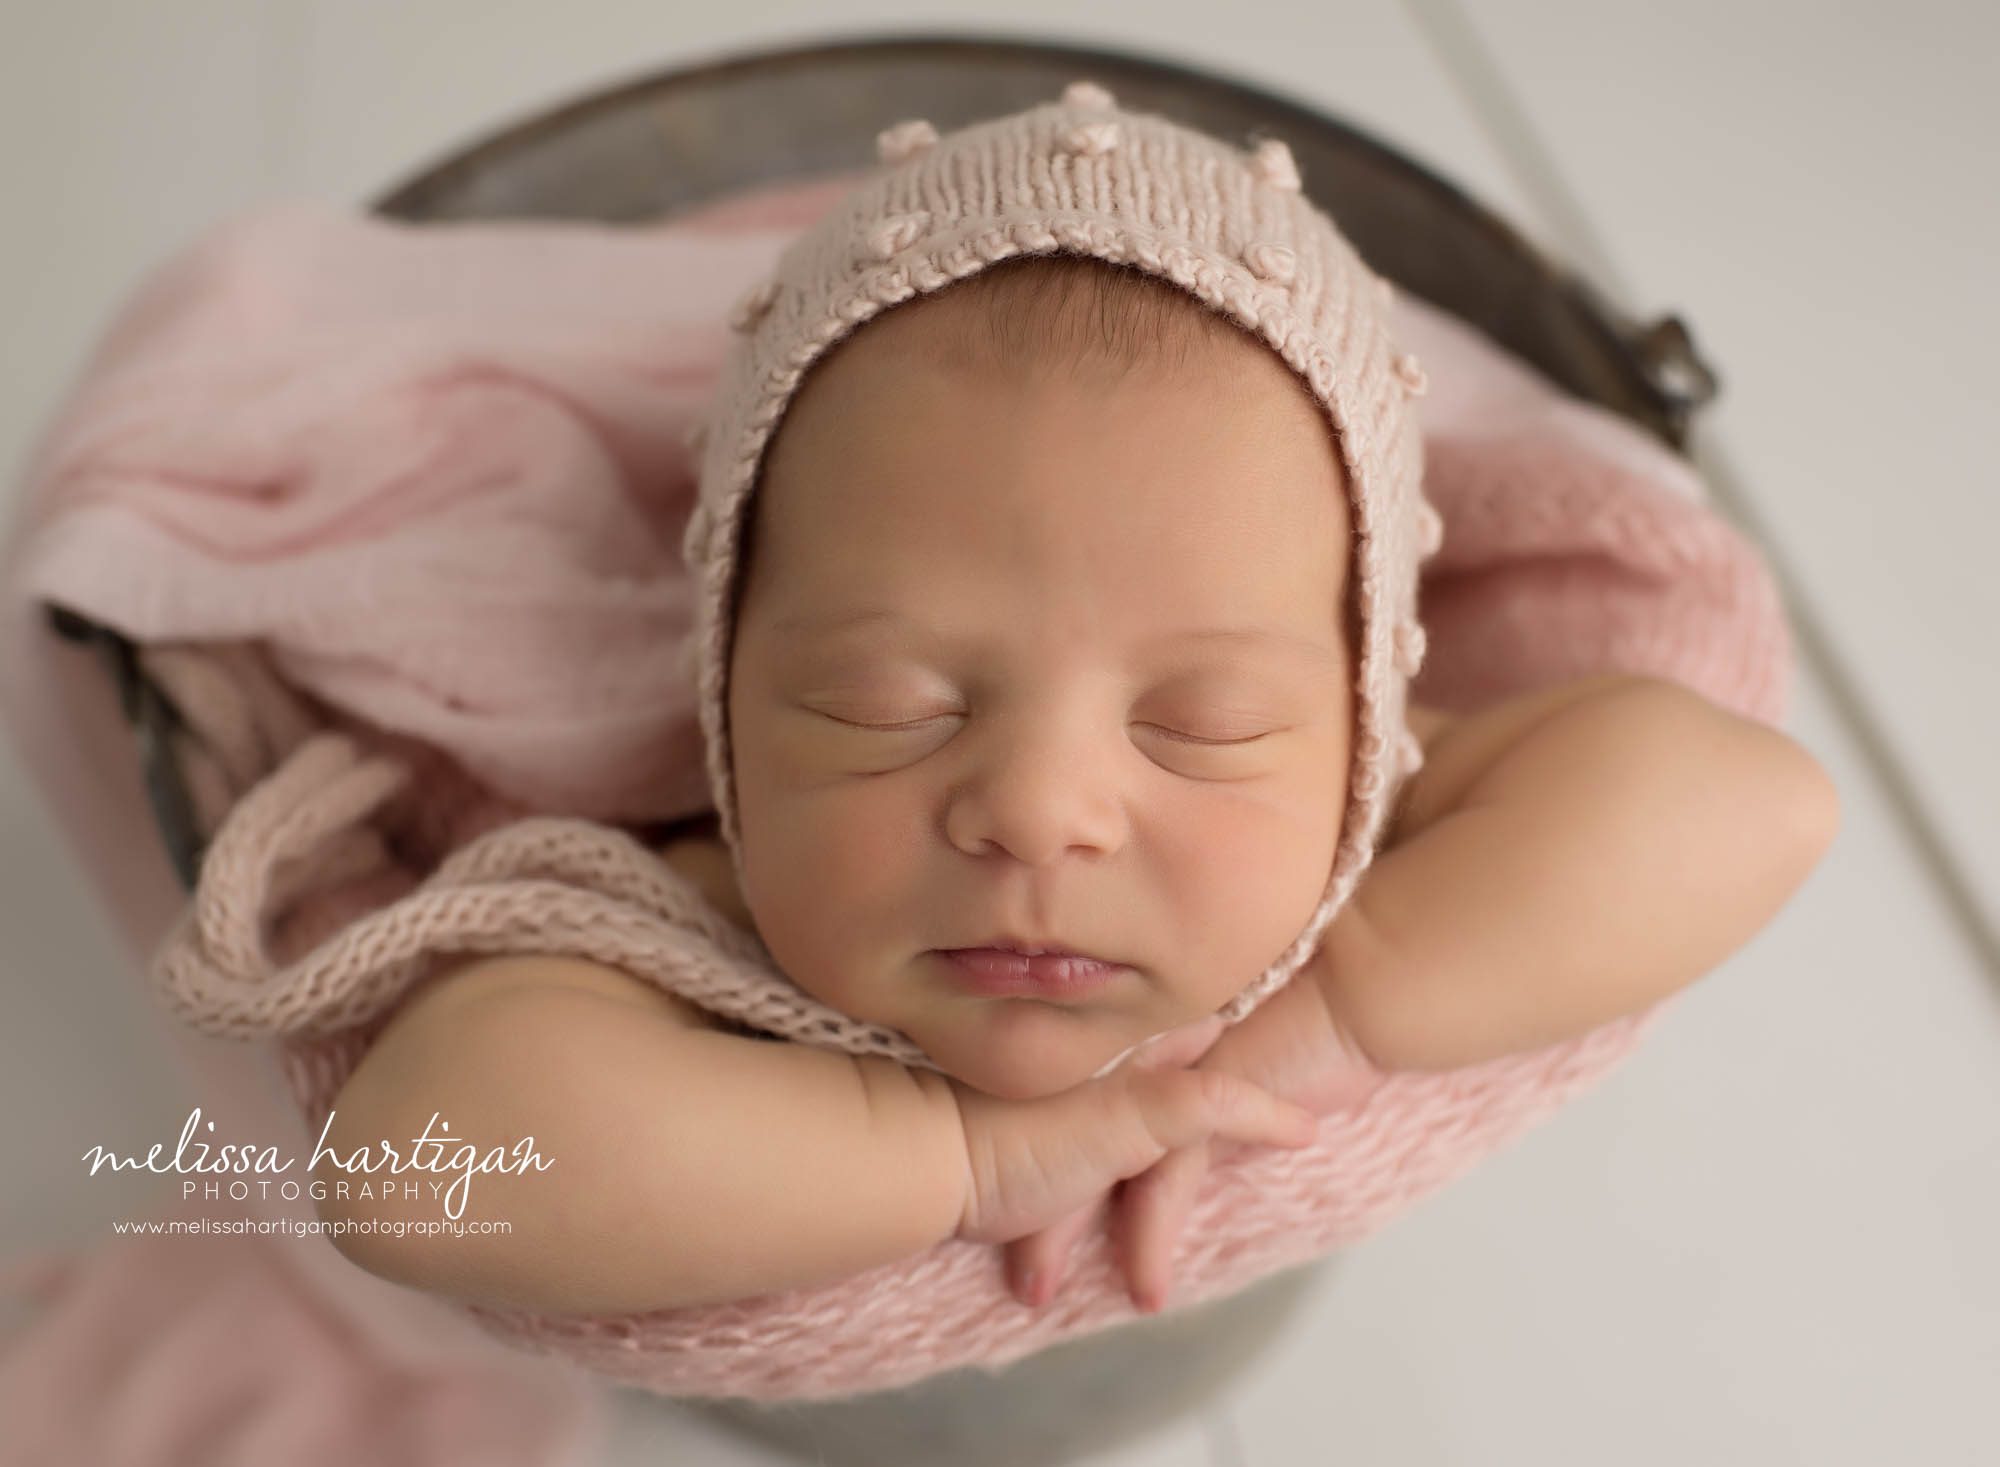 newborn baby girl posed in bucket wear pink bonnet